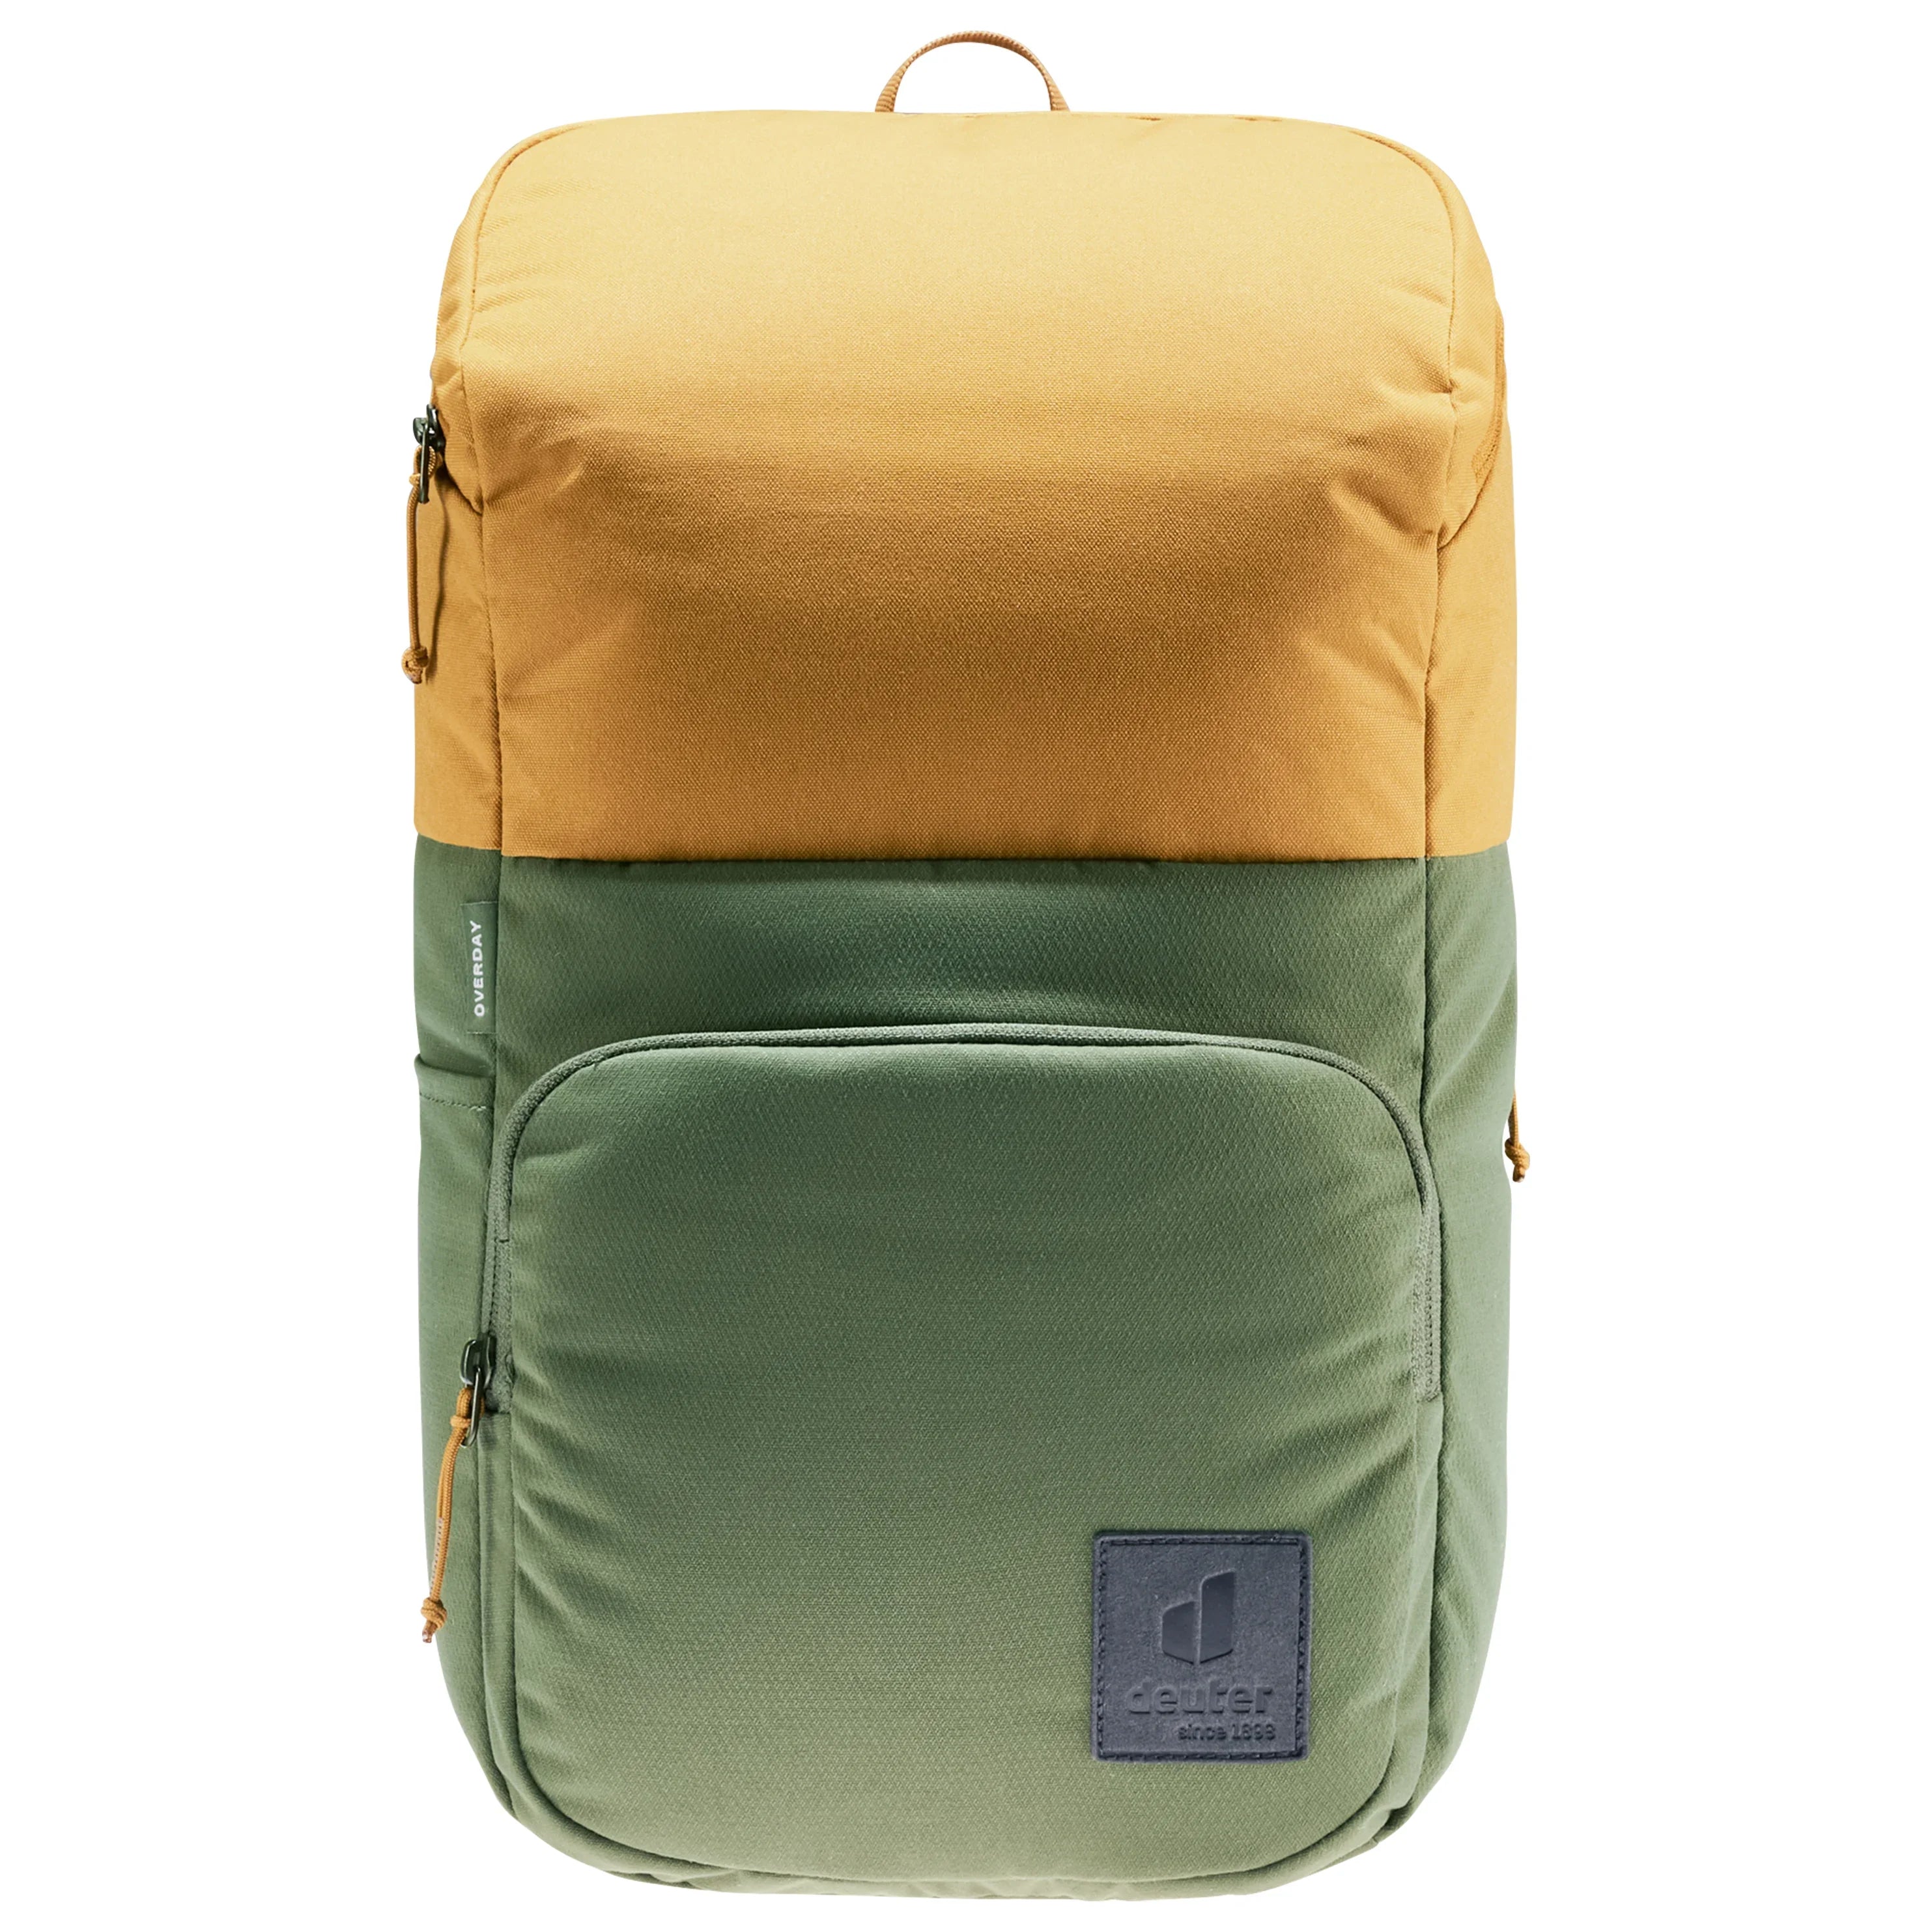 Deuter Daypack Overday children's backpack 43 cm - Khaki-Cinnamon